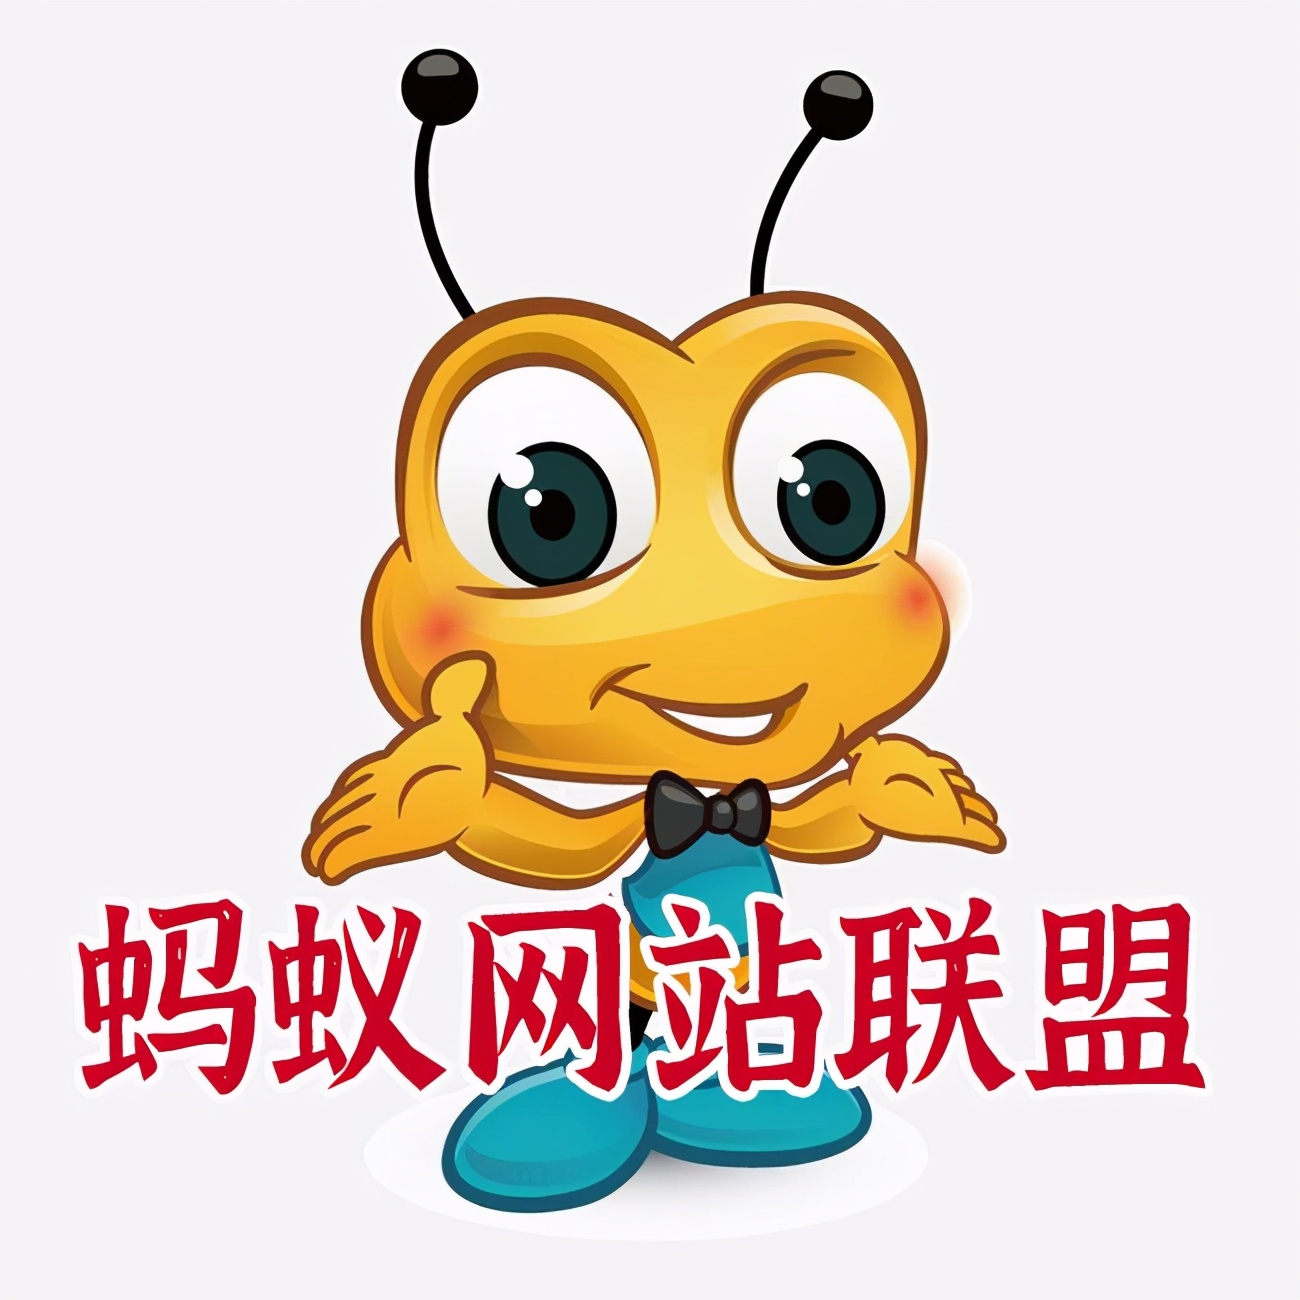 2021年自媒体怎么做，蚂蚁文化传媒刘鑫炜来告诉你